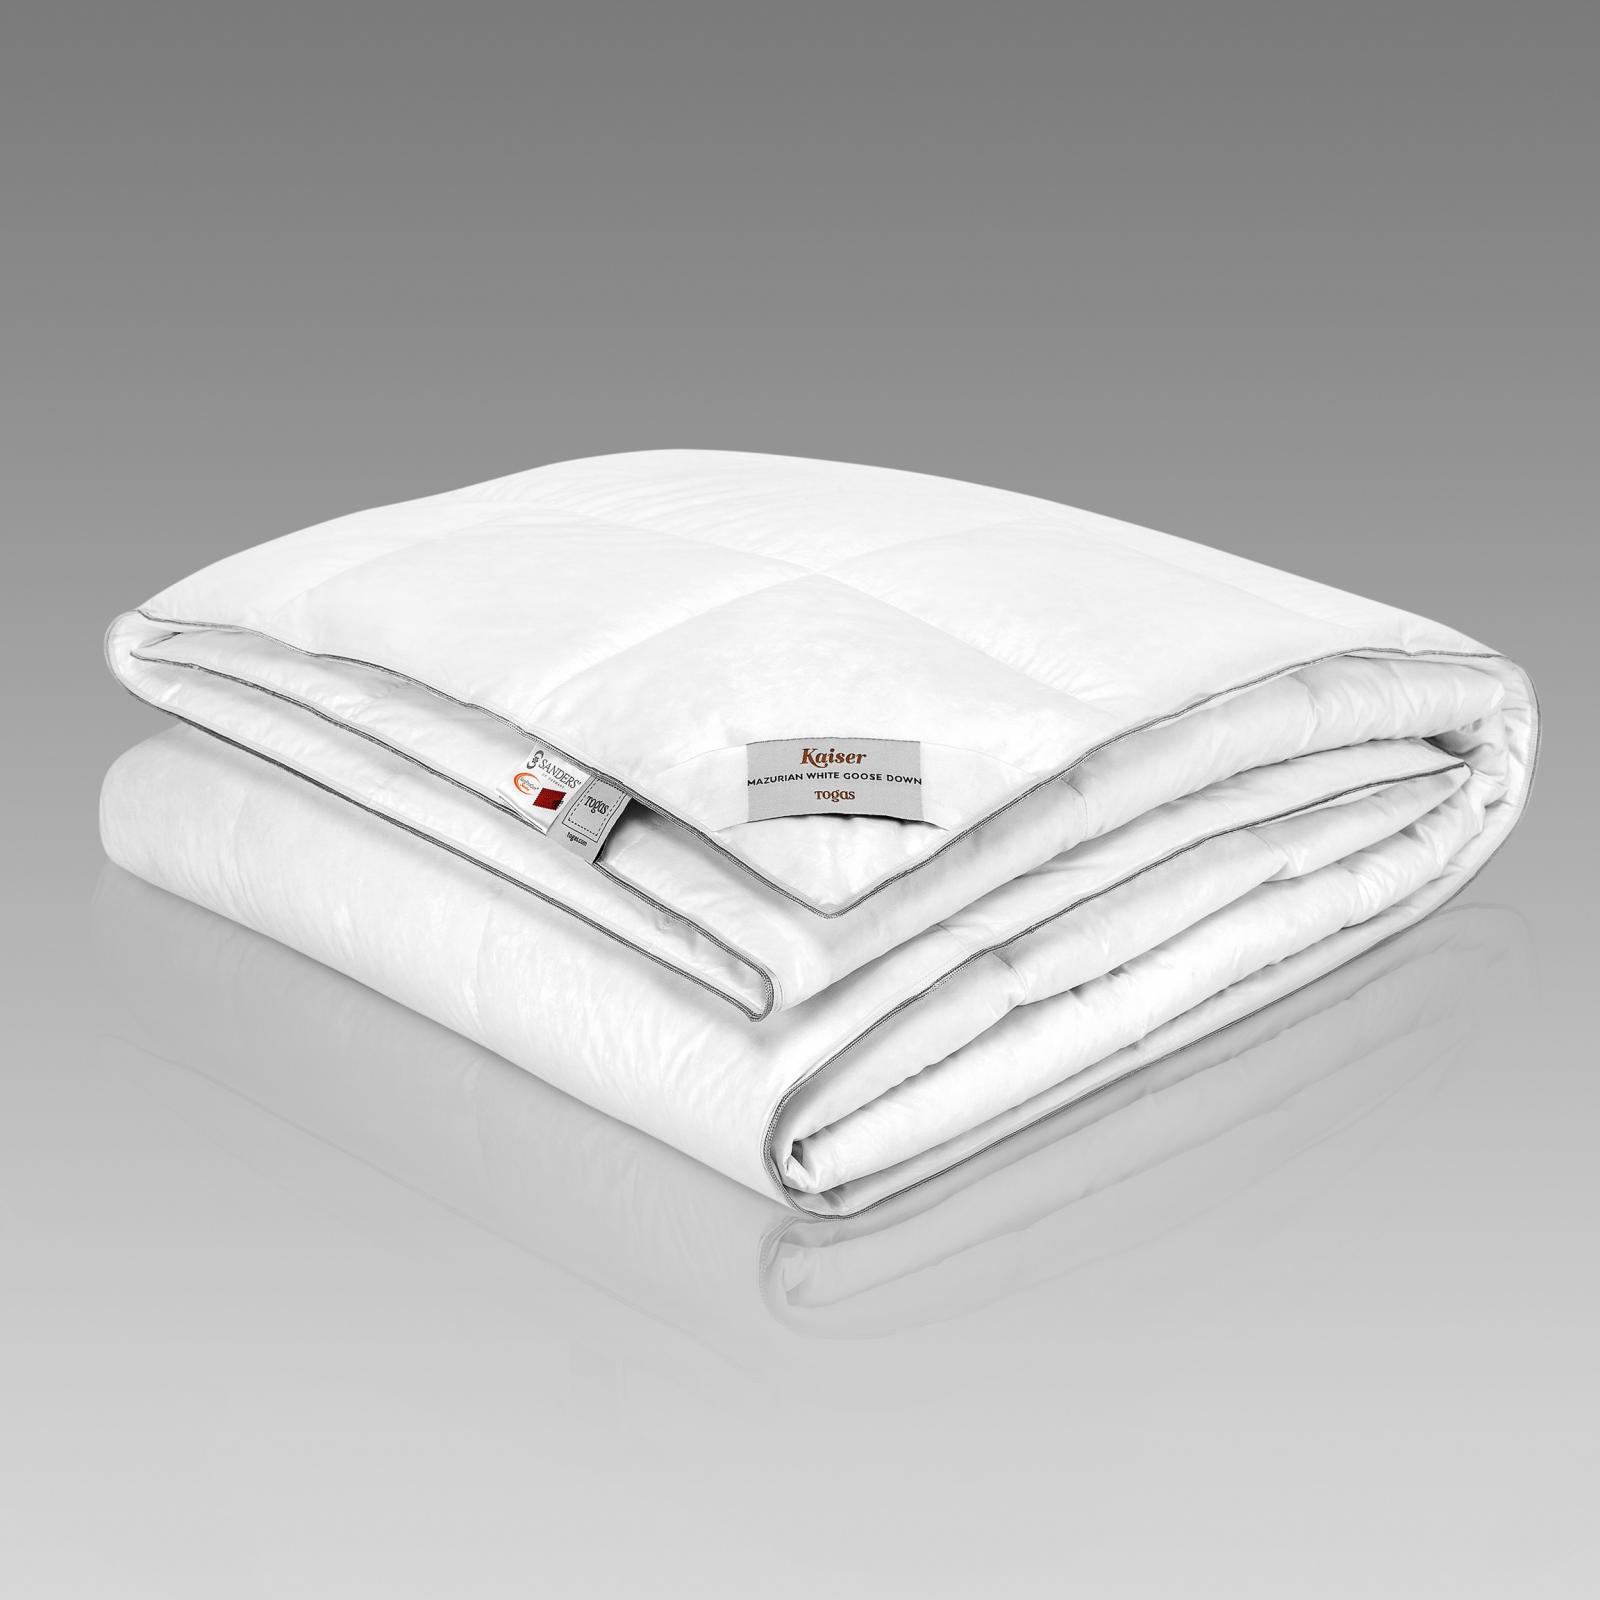 Одеяло Togas Кайзер 140х200 см одеяло togas кайзер белое 200х210 см